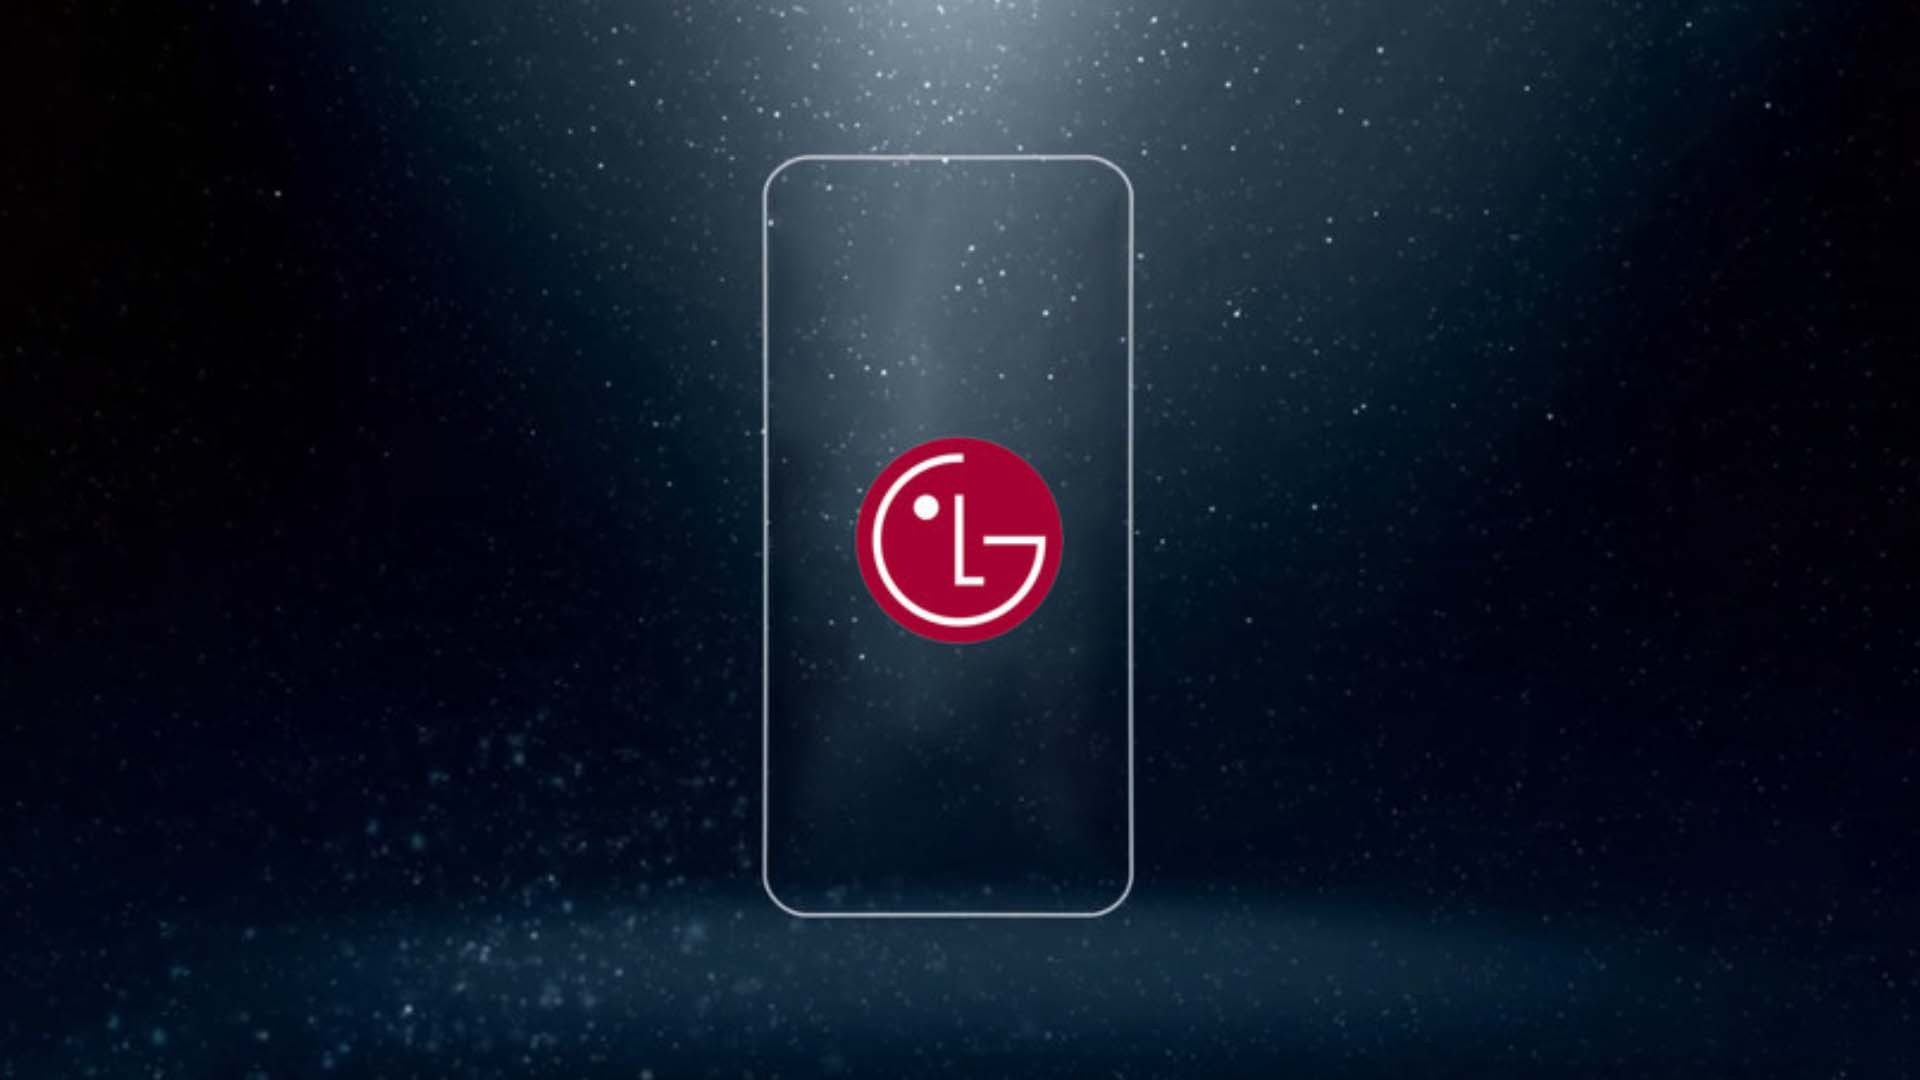 ال جی جی 7 (LG G7)